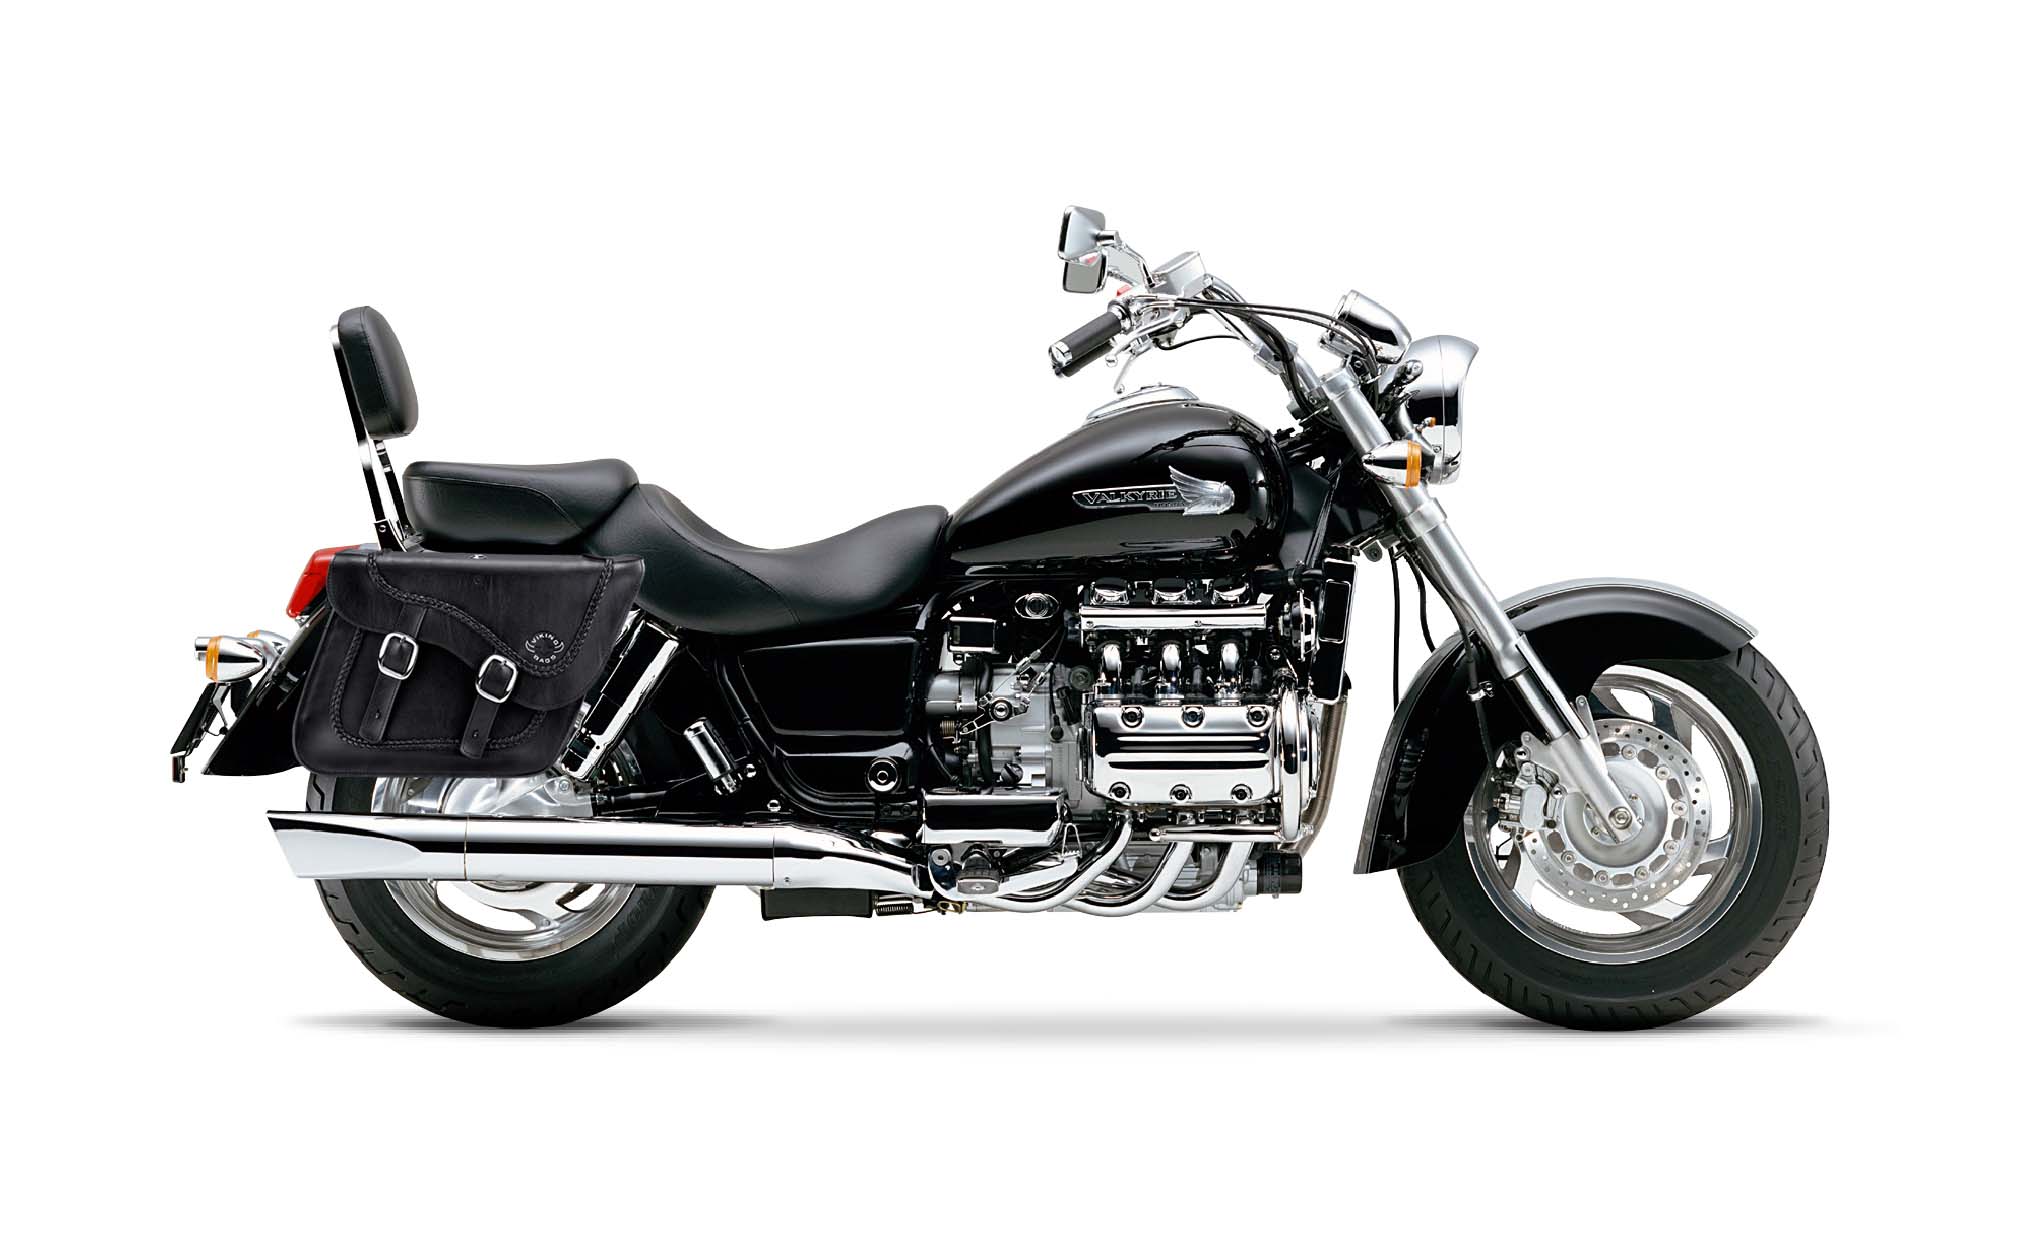 Viking Americano Honda Valkyrie 1500 Standard Braided Large Leather Motorcycle Saddlebags on Bike Photo @expand